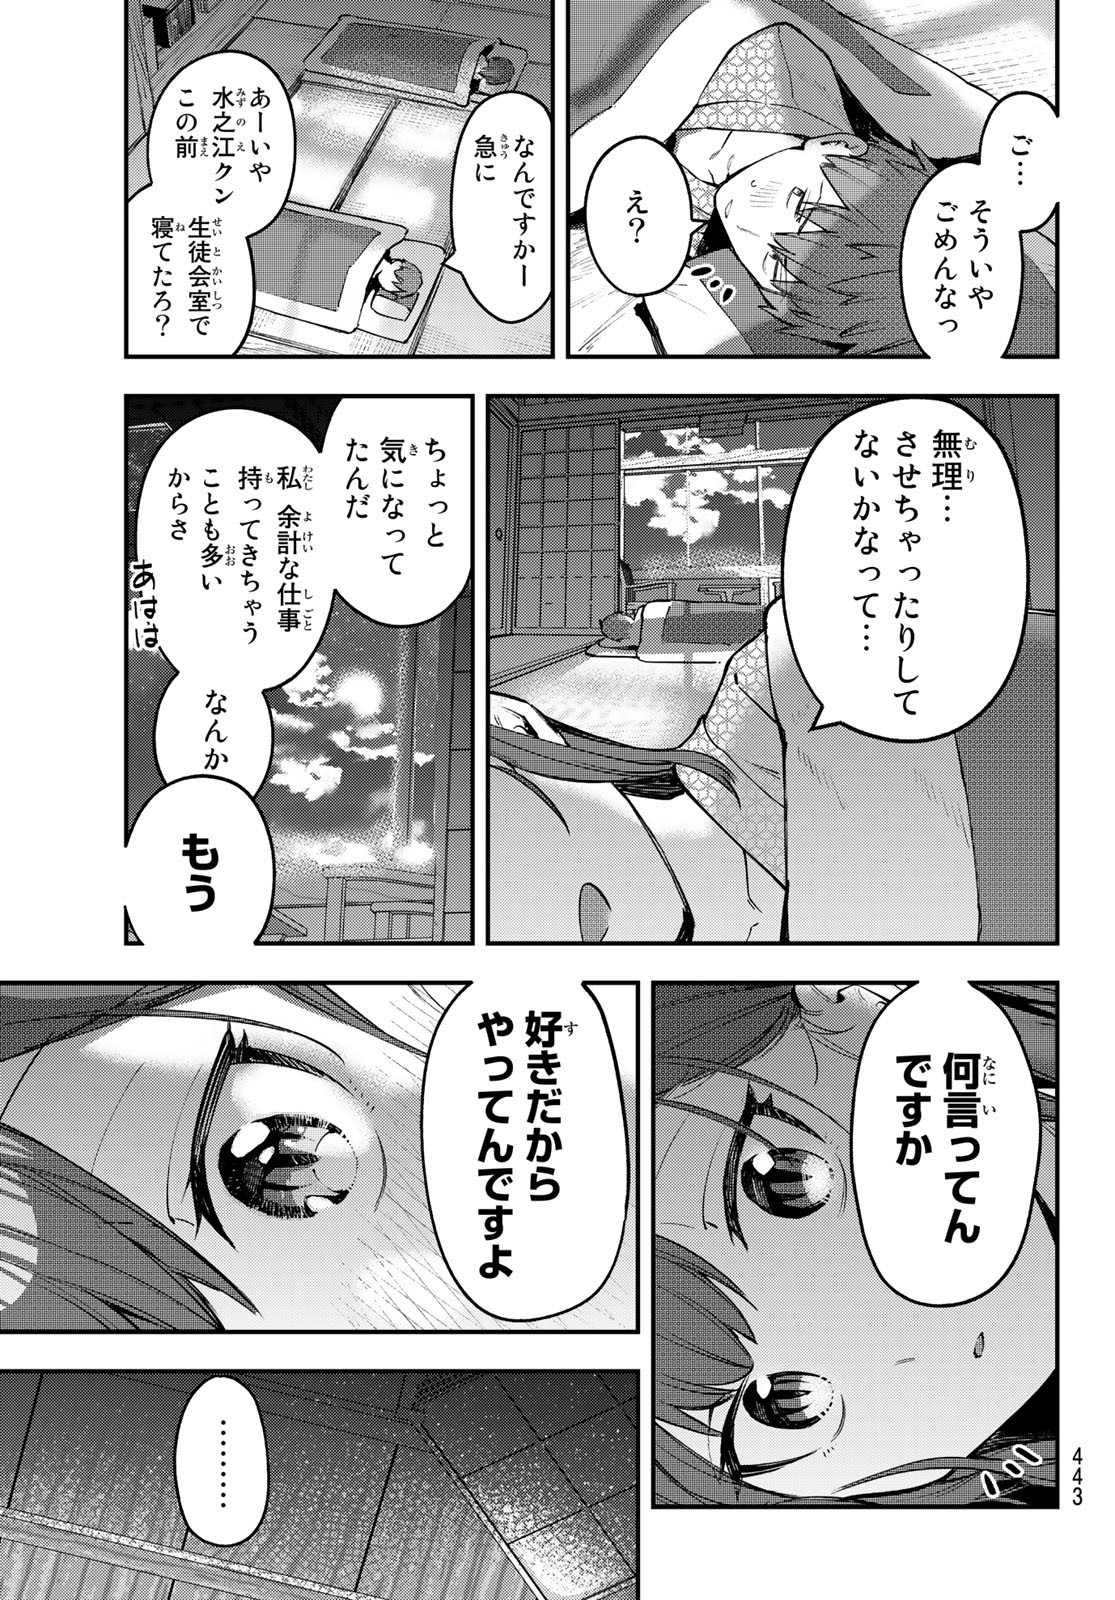 Seitokai ni mo Ana wa Aru! - Chapter 020 - Page 7